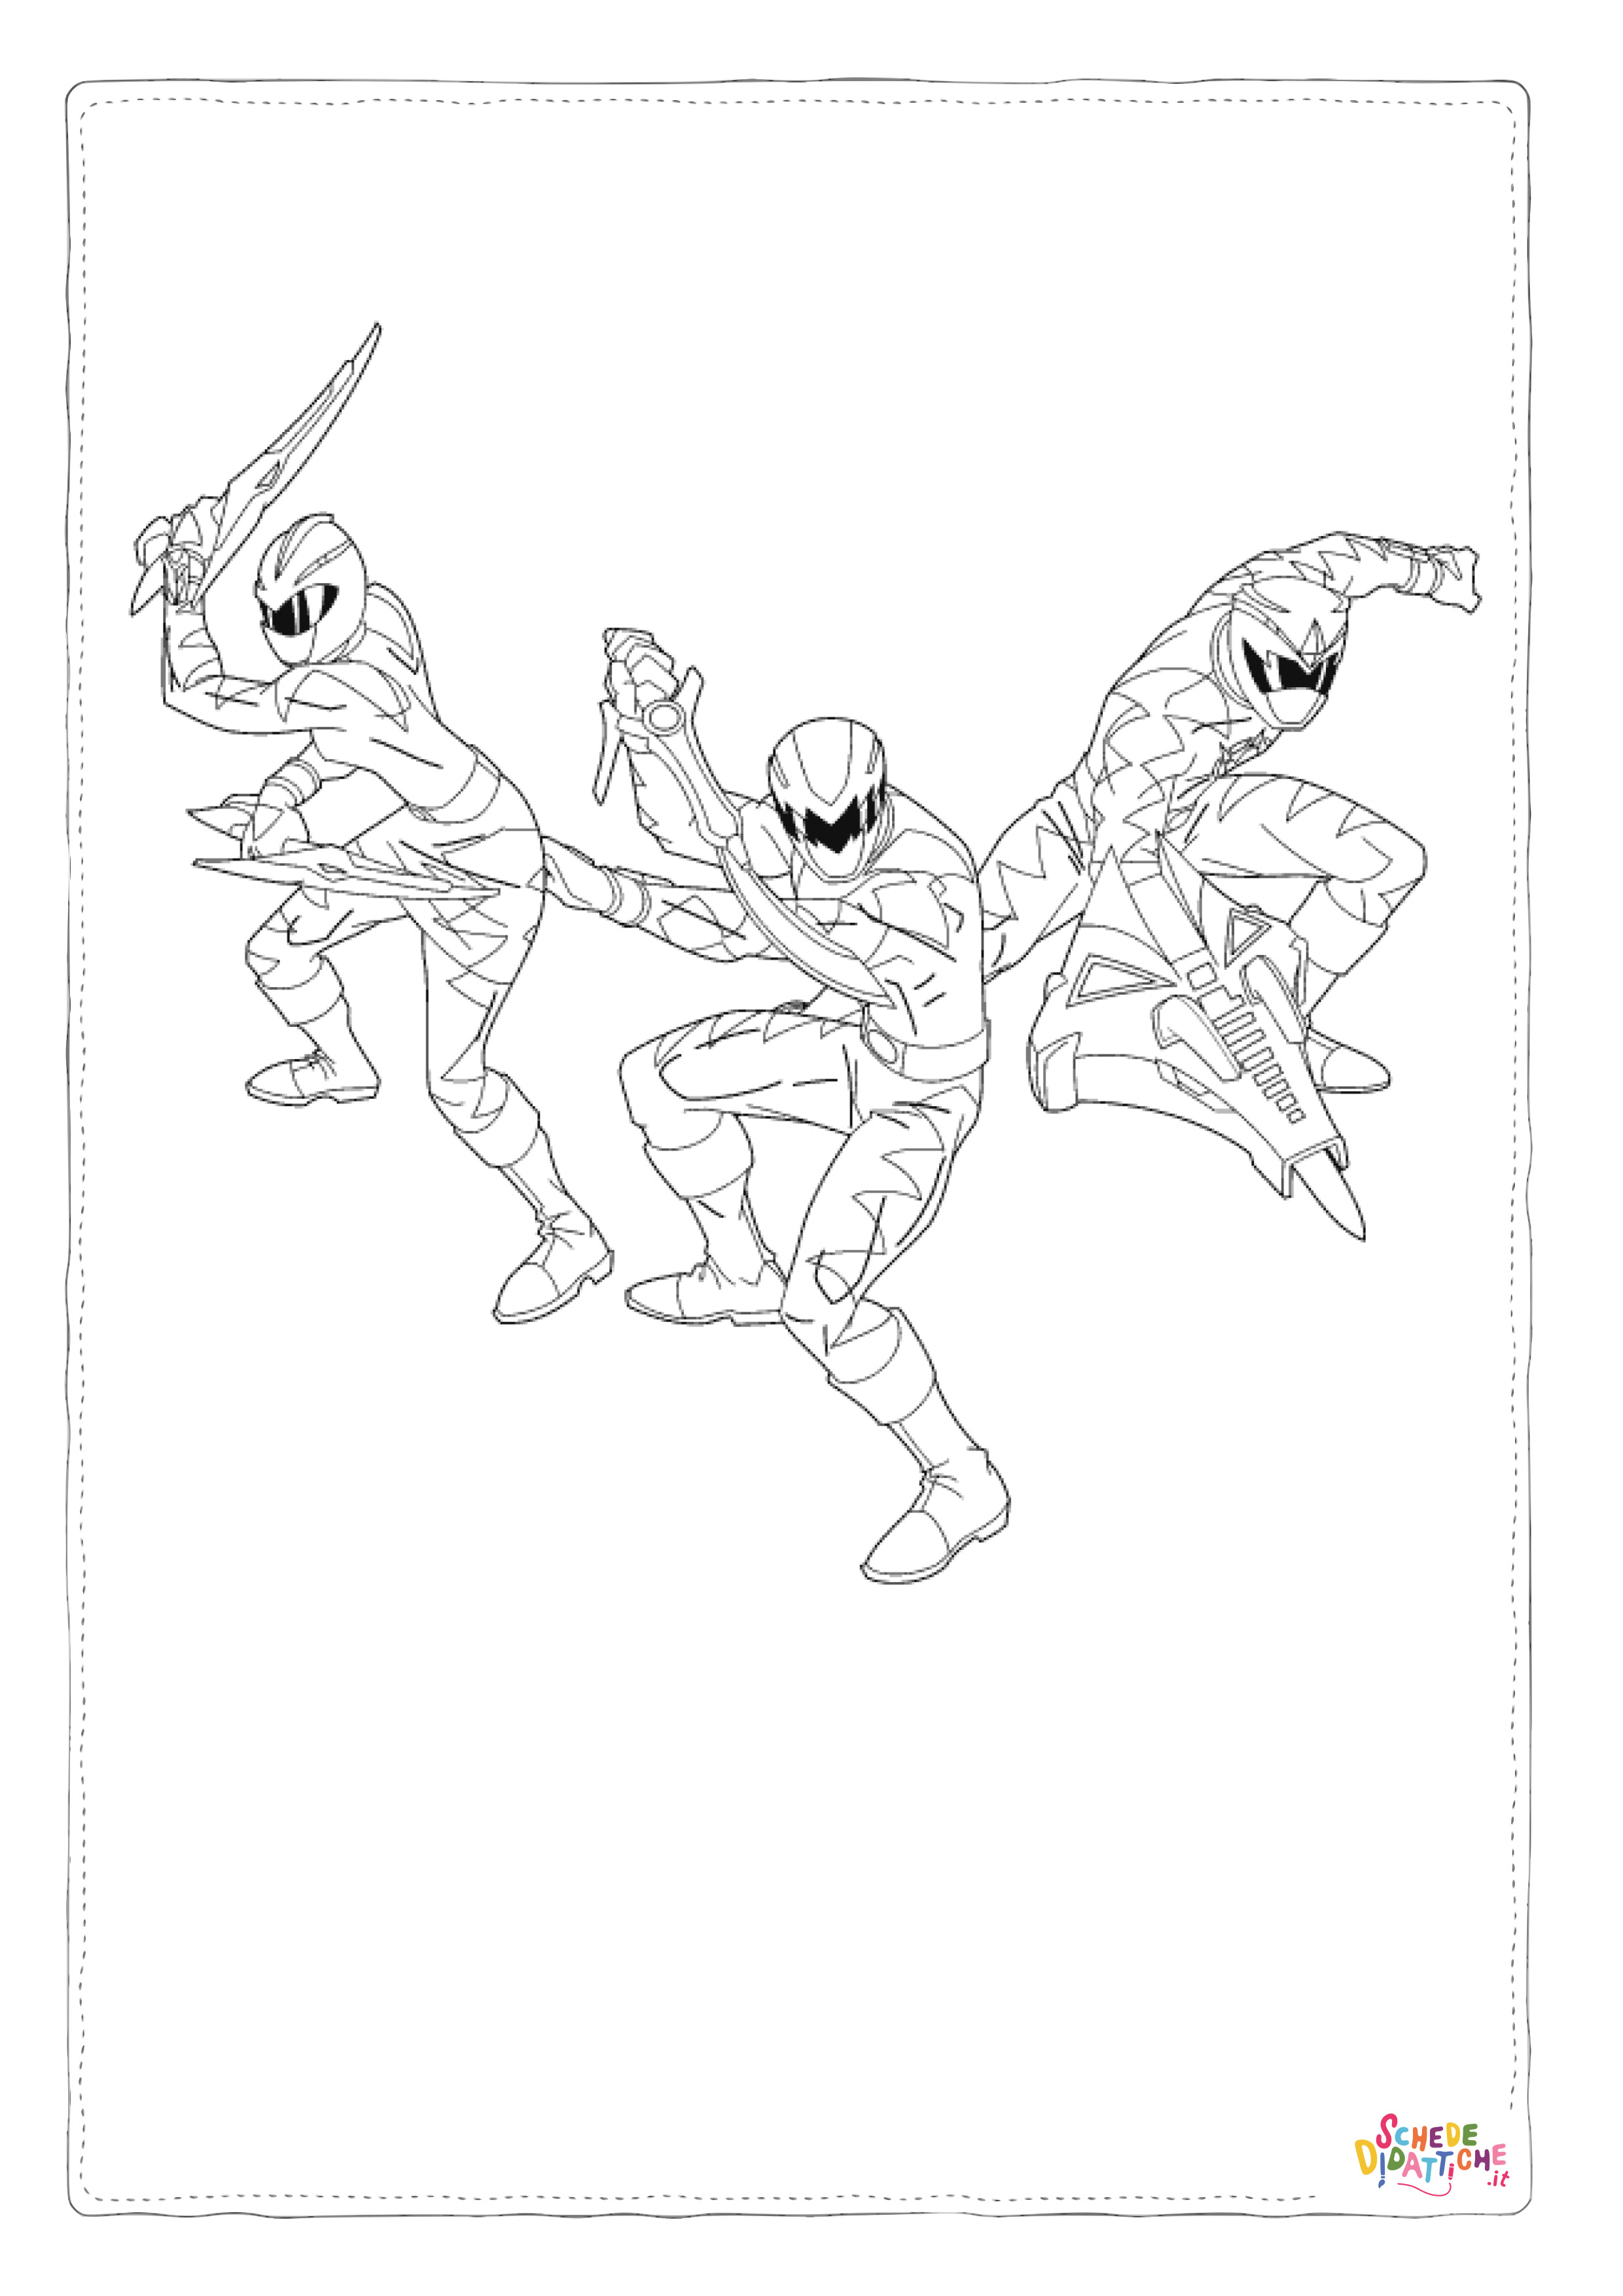 Disegno di Power Rangers da stampare e colorare 20